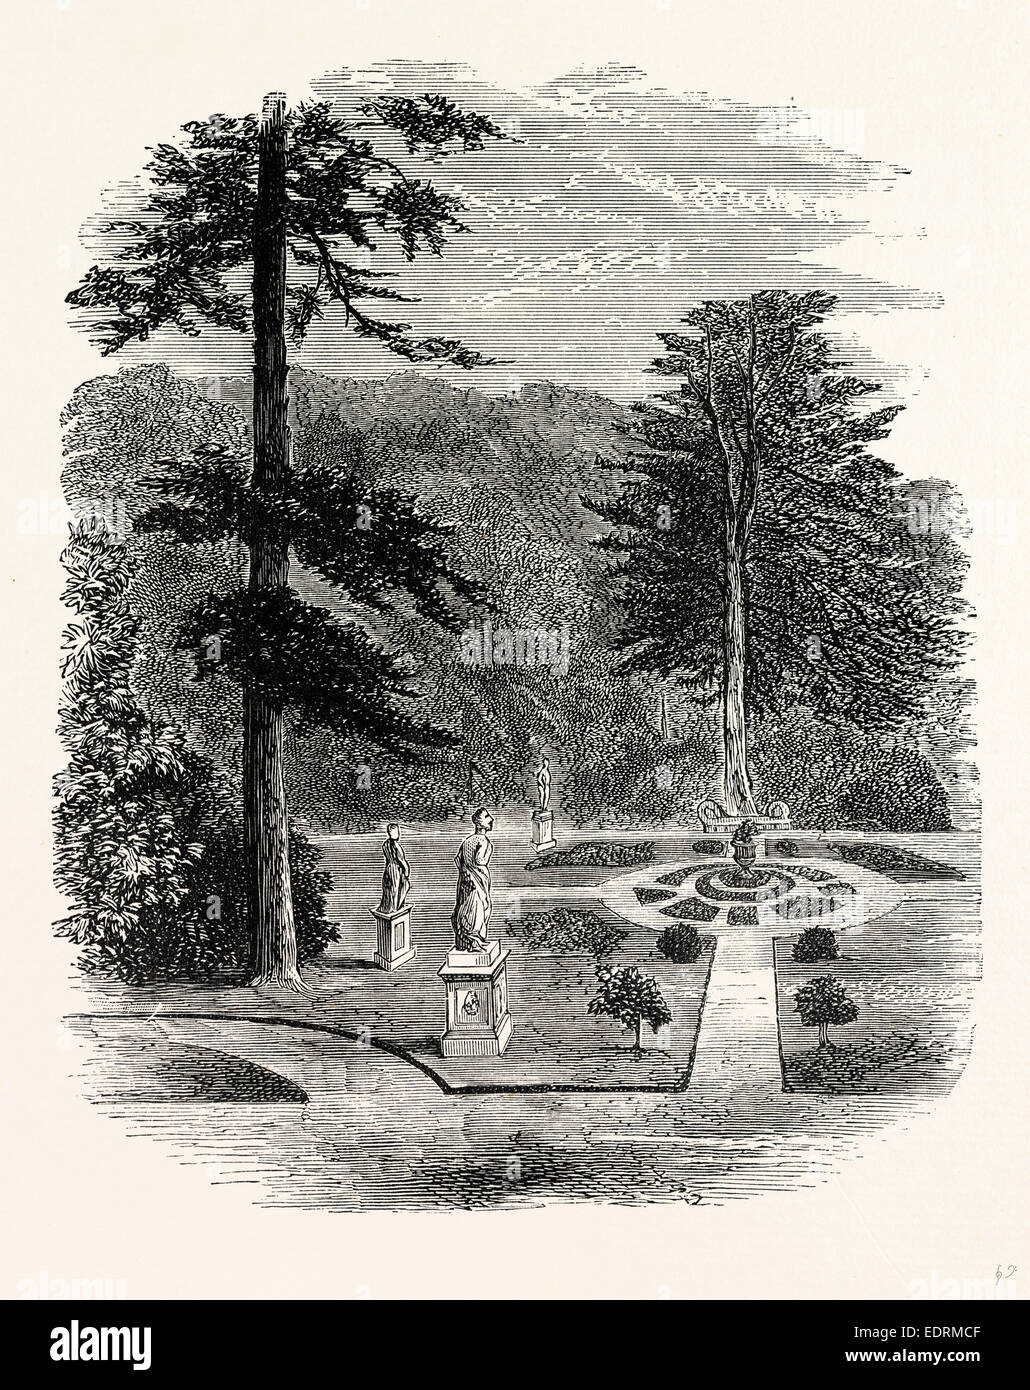 Le jardin des statues, Château de Belvoir, Royaume-Uni, Angleterre, gravure années 1870, la Grande-Bretagne Banque D'Images